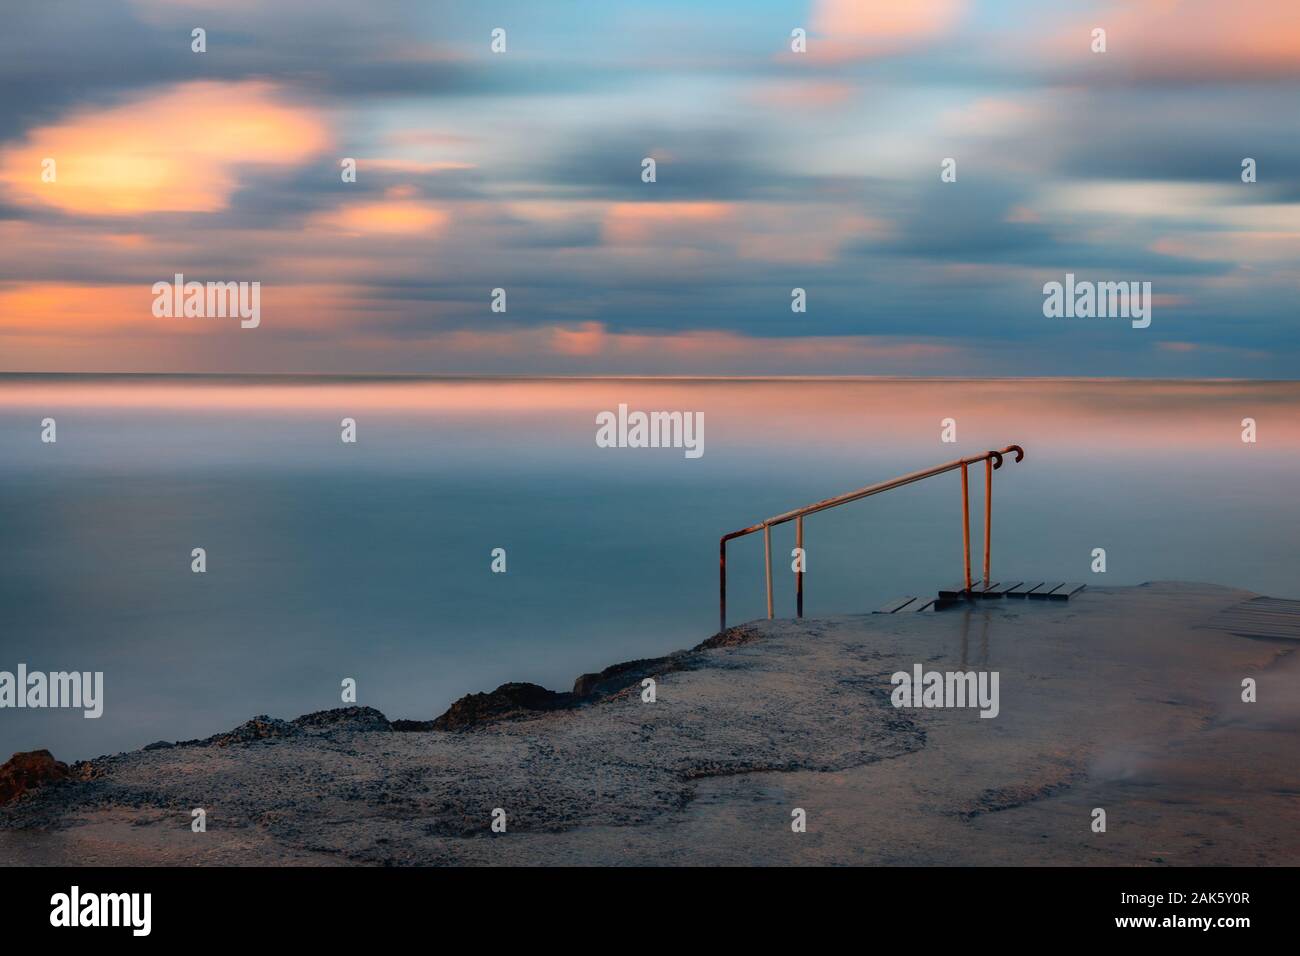 La larga exposición seascape fine art fotografía de pier en un amanecer en Paphos, Chipre Foto de stock